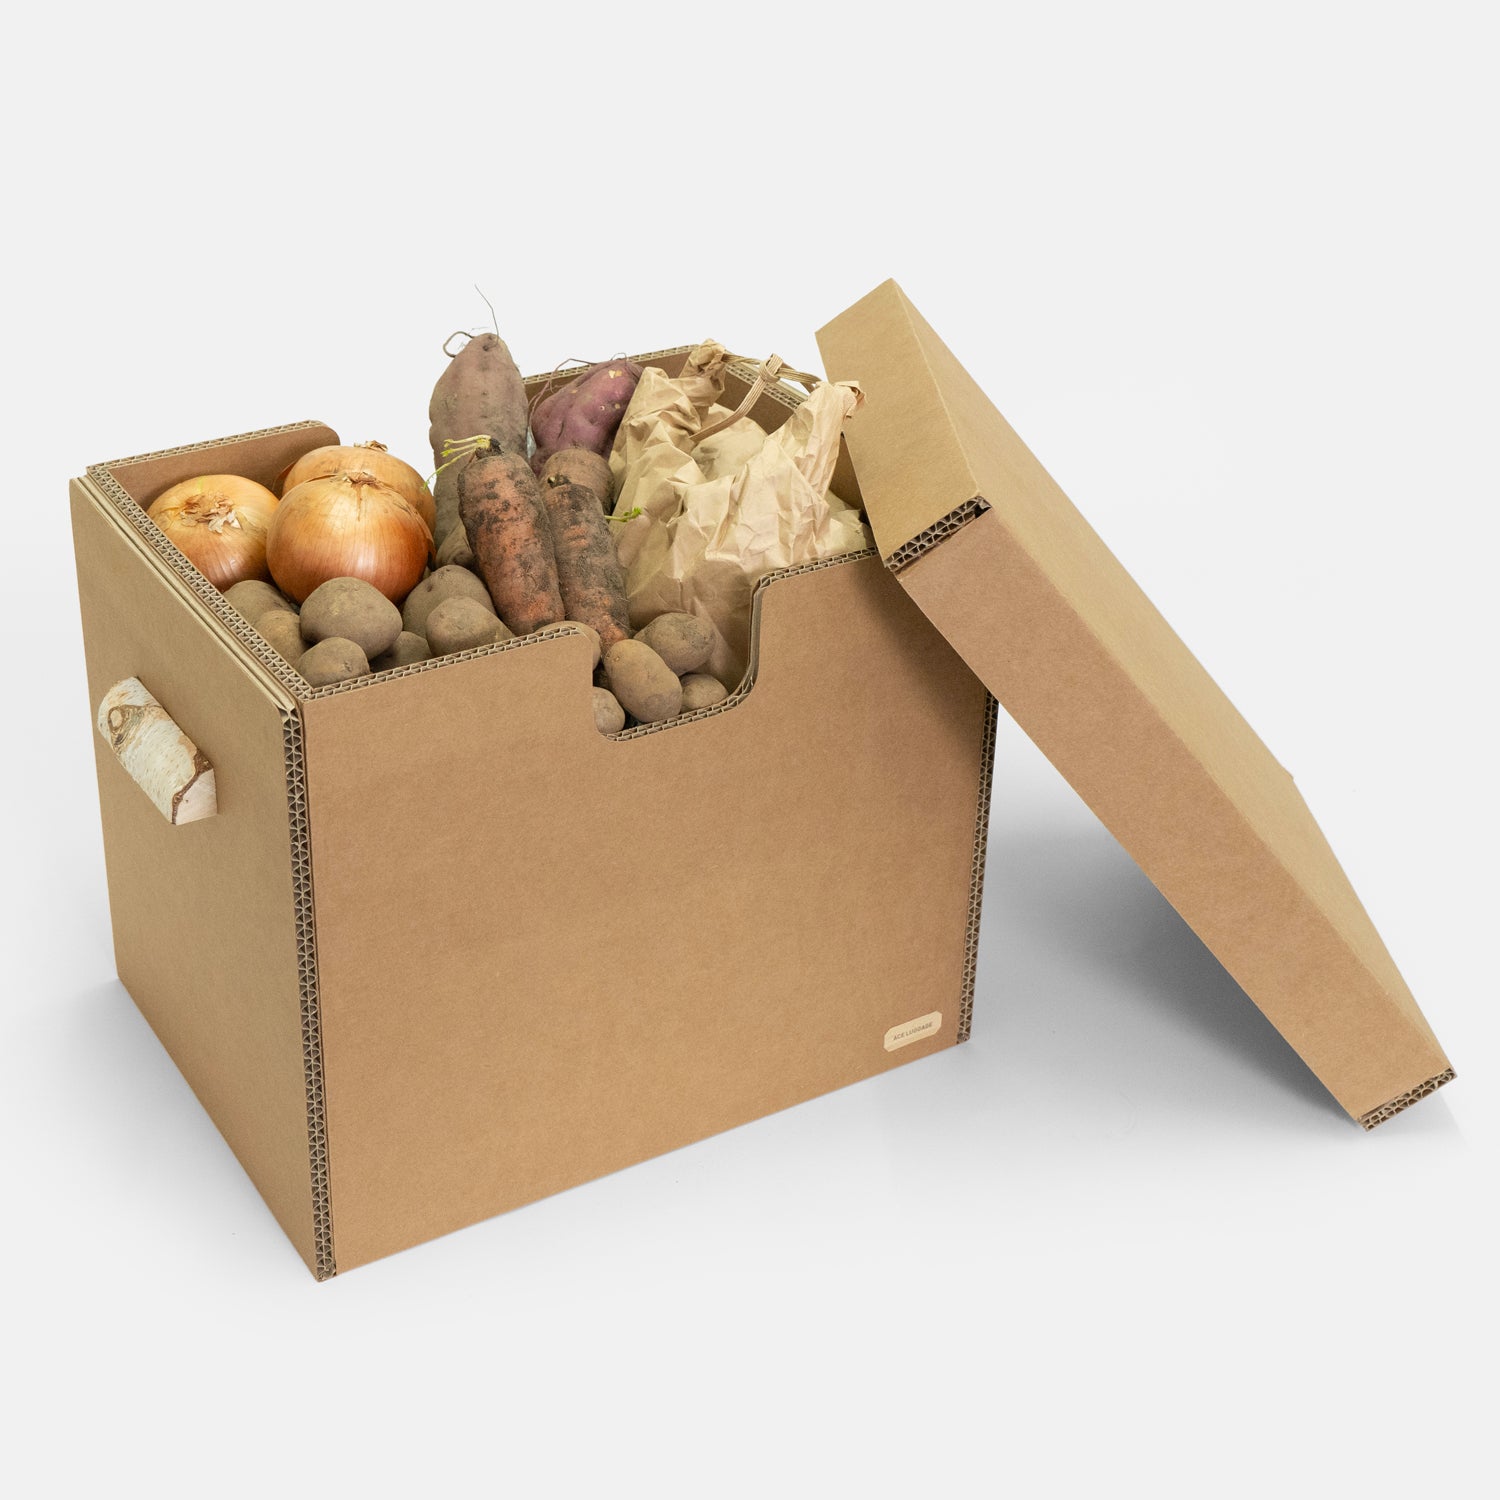 「mCBシラカンバBOX 19.2インチ」は、冷蔵庫に入れない野菜やお米袋など、食料ストックなどを収納するボックスとしてもお使いいただけます。